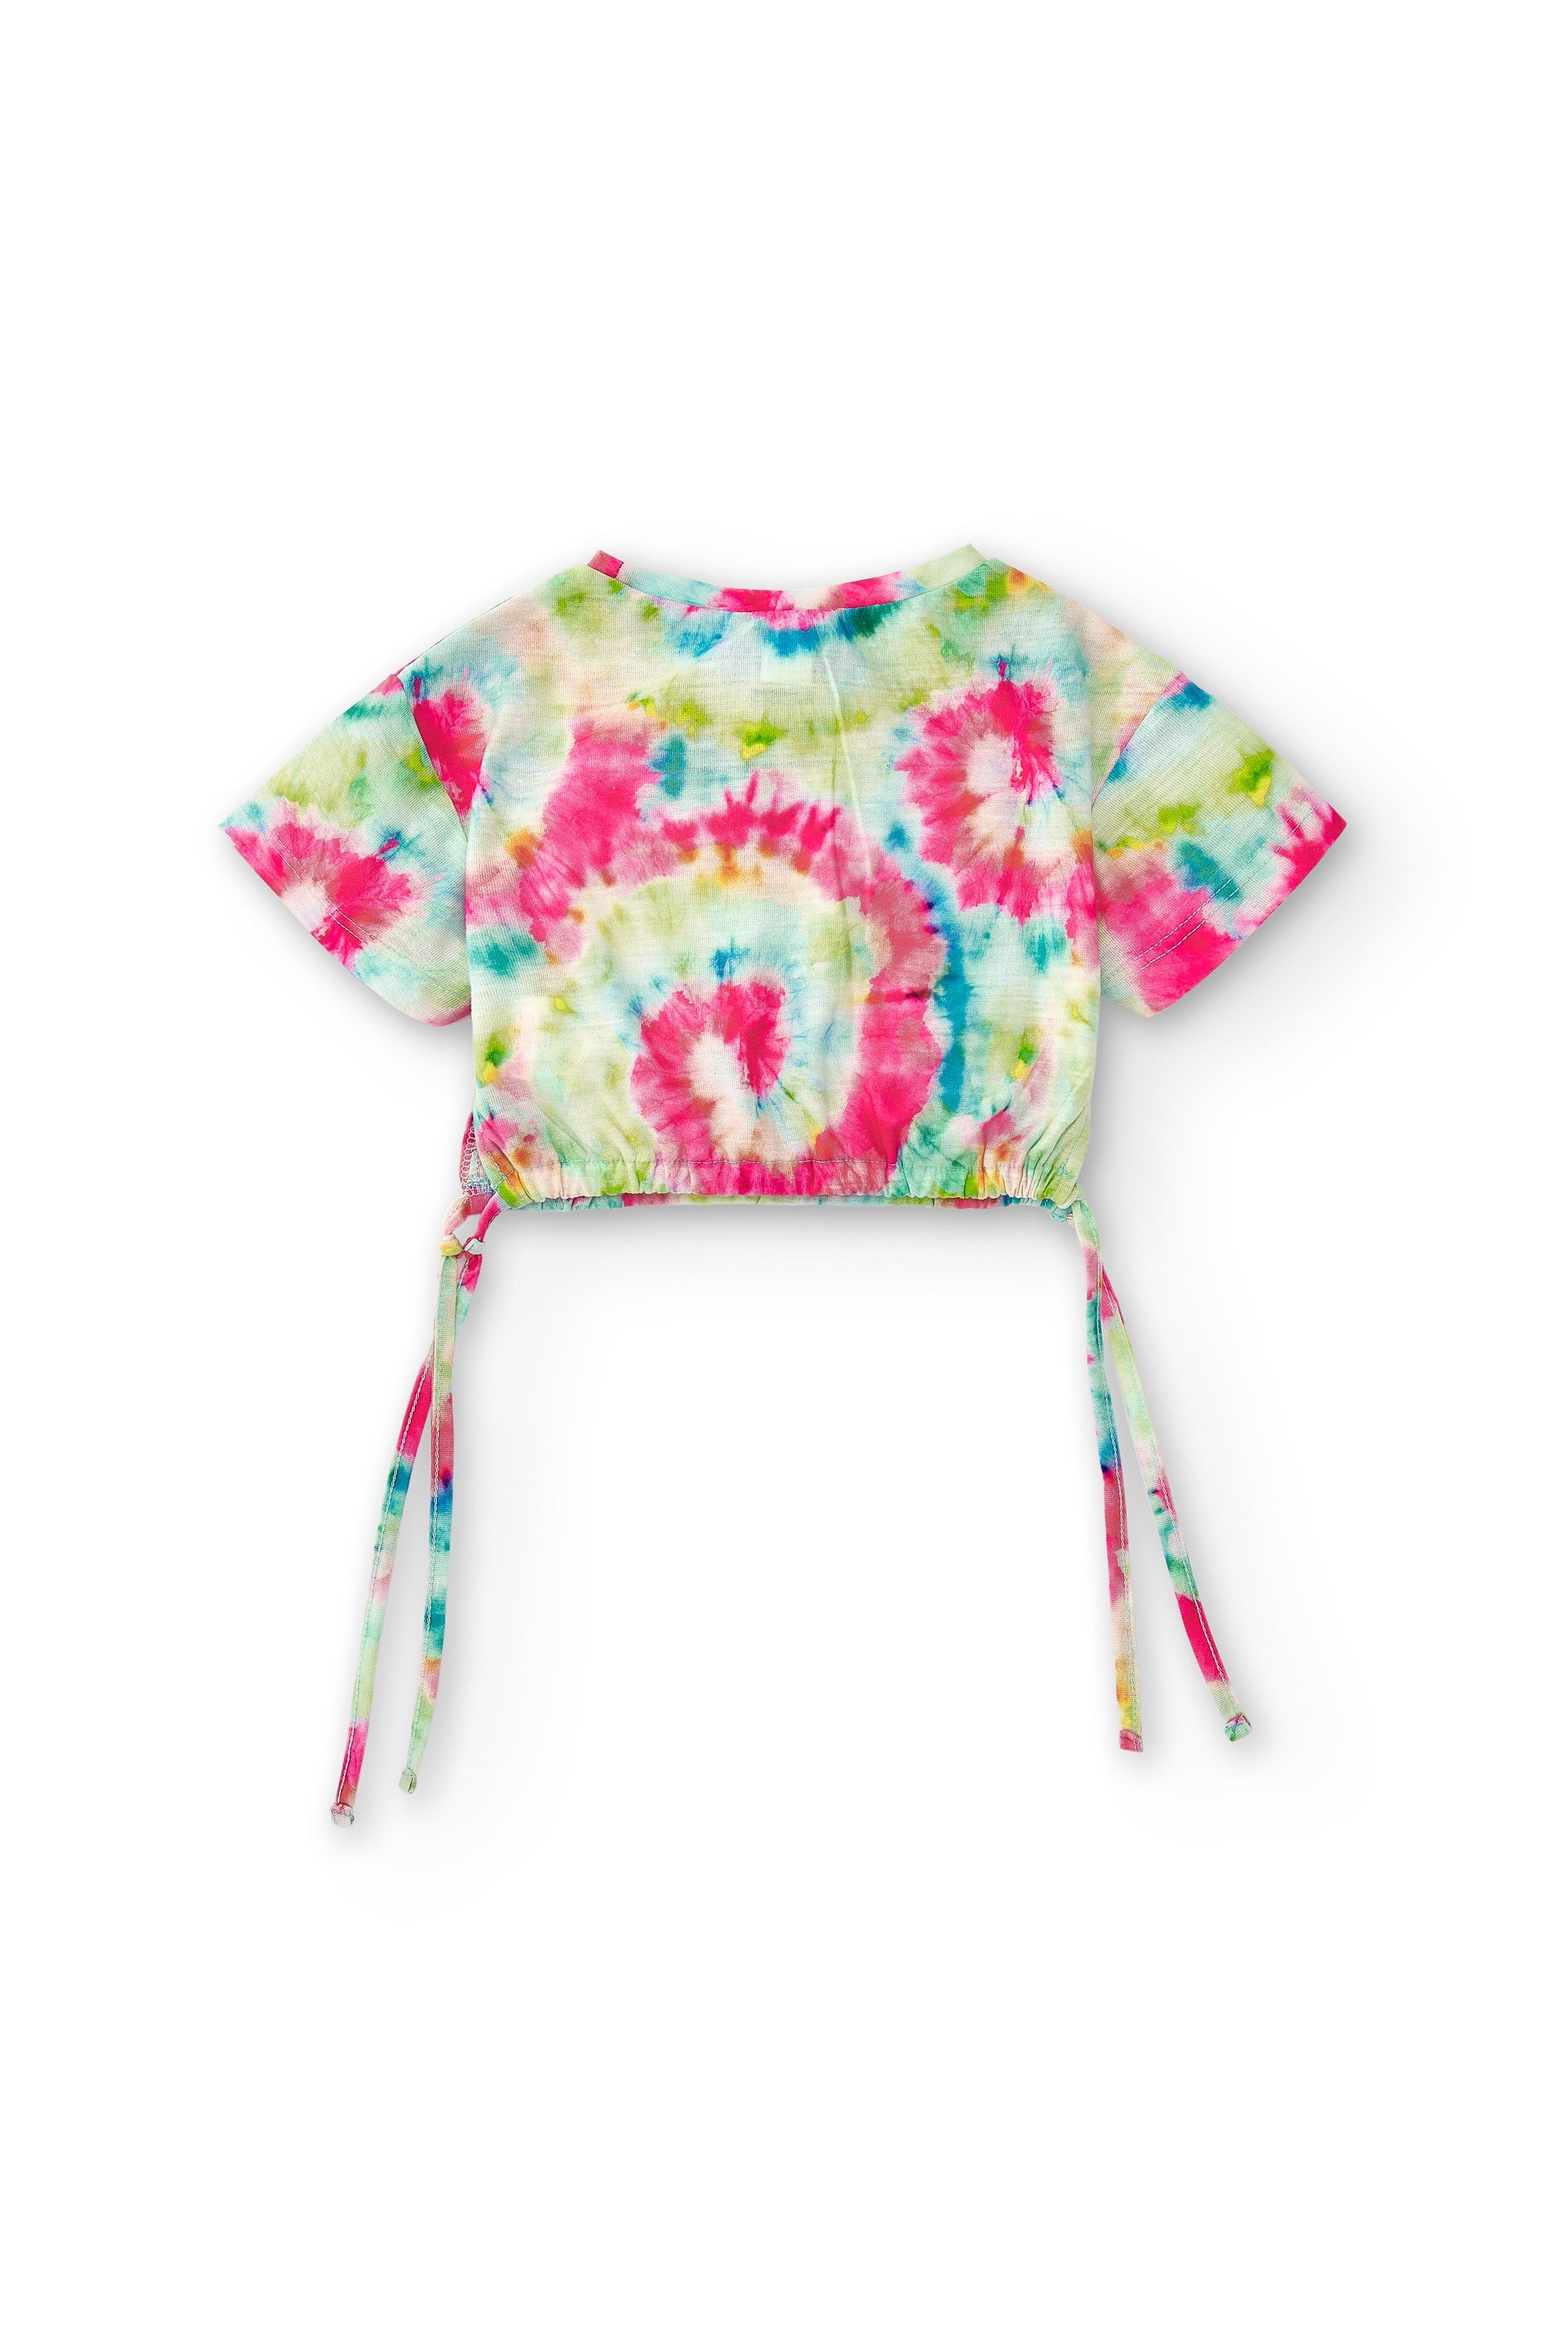 Camiseta de niña multicolor VERANO/Outlet